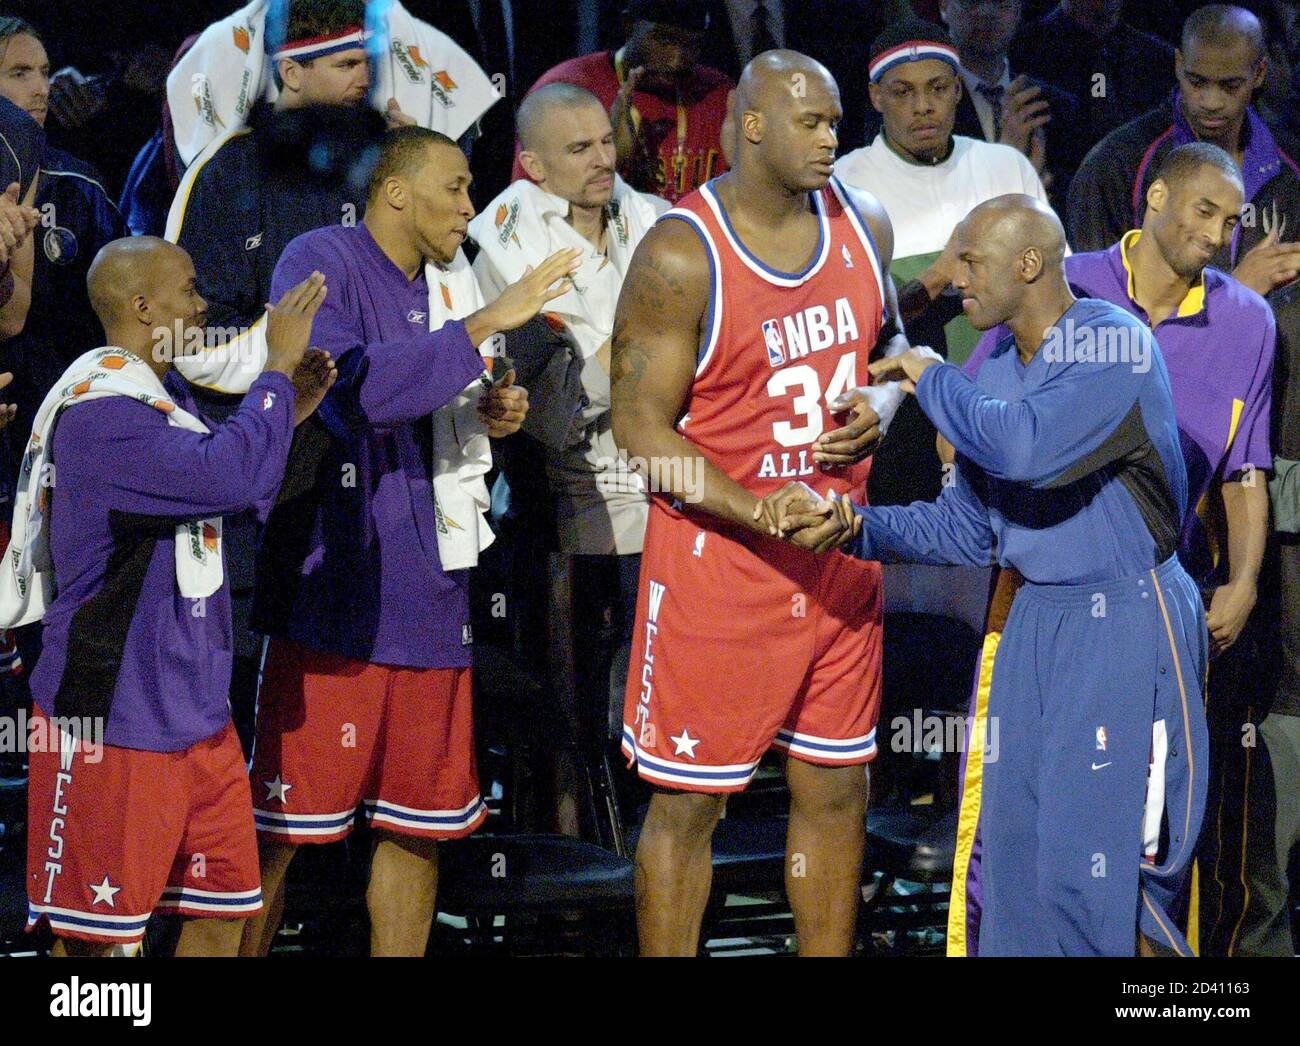 Ataque de nervios entregar Incompatible Los Washington Wizards Michael Jordan (2ndL) es recibido por sus compañeros  de NBA All-Stars durante las presentaciones de los jugadores antes del 52º  juego anual de la NBA All-Star jugado en Atlanta,